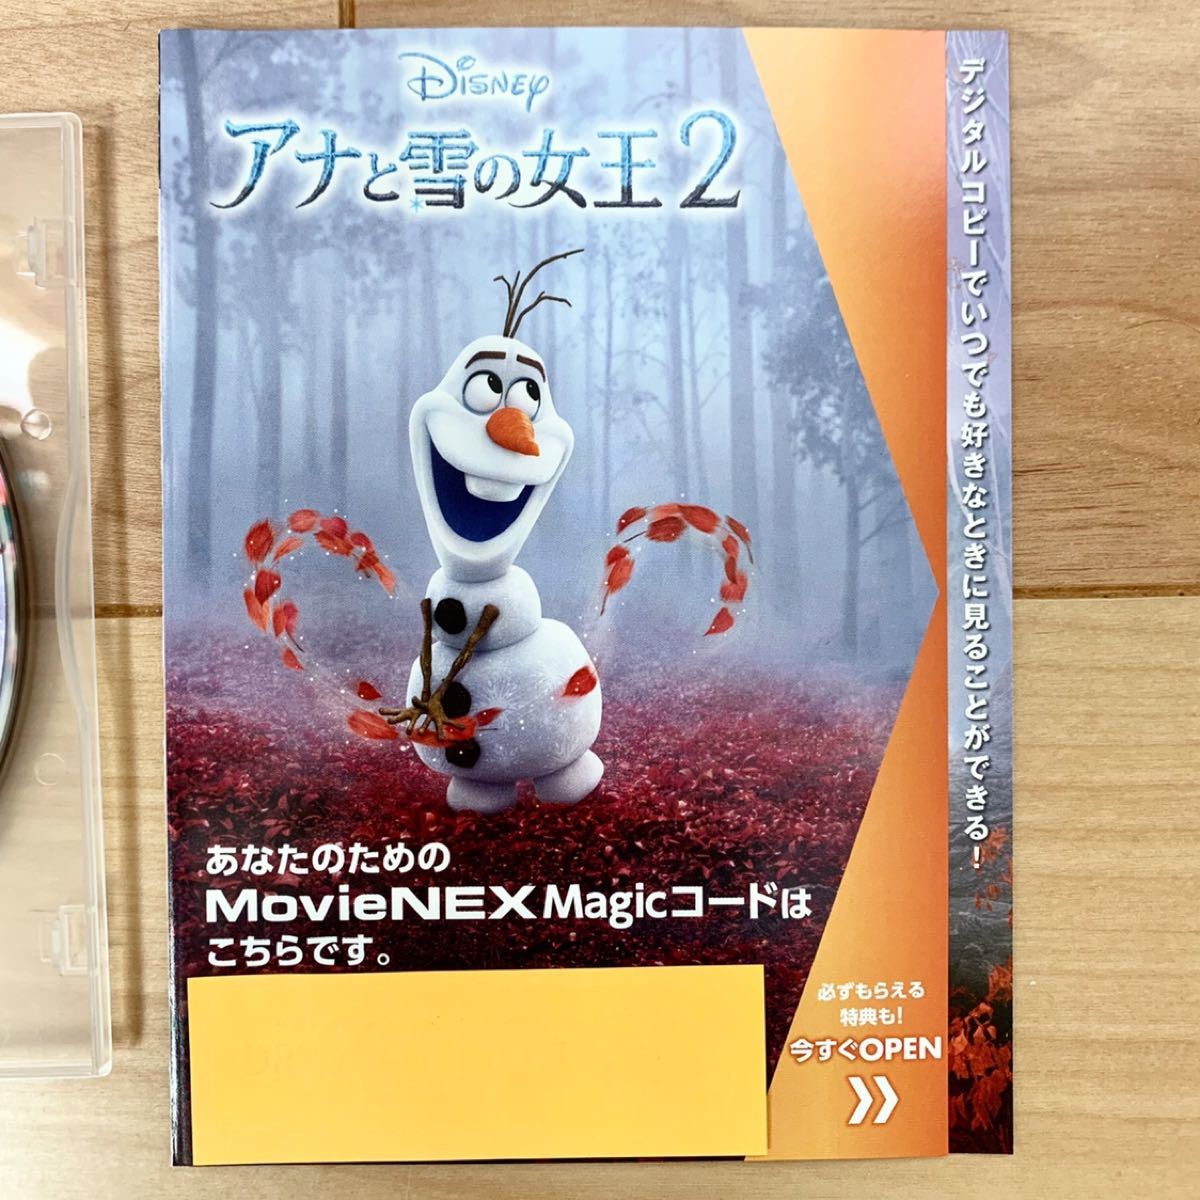 ☆マジックコード付き☆ アナと雪の女王2 DVDディスク 新品未再生 国内正規品 MovieNEX  Disney